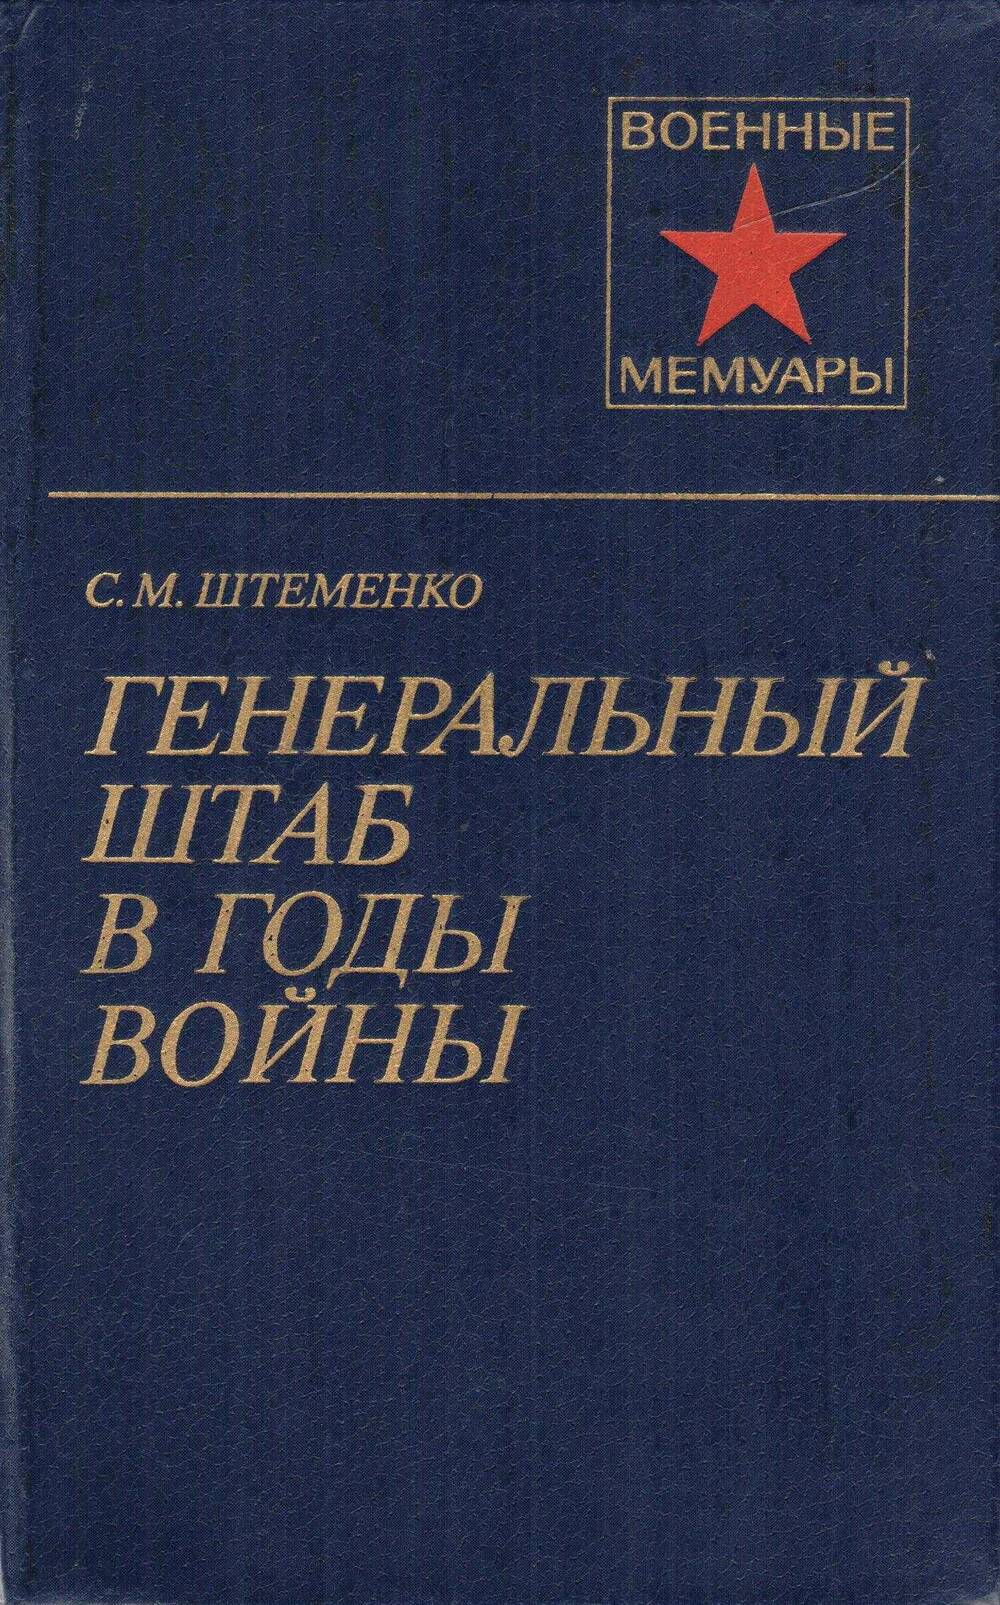 Книга: С.М. Штеменко Генеральный штаб в годы войны в 2-х книгах, Москва, 1981 г.